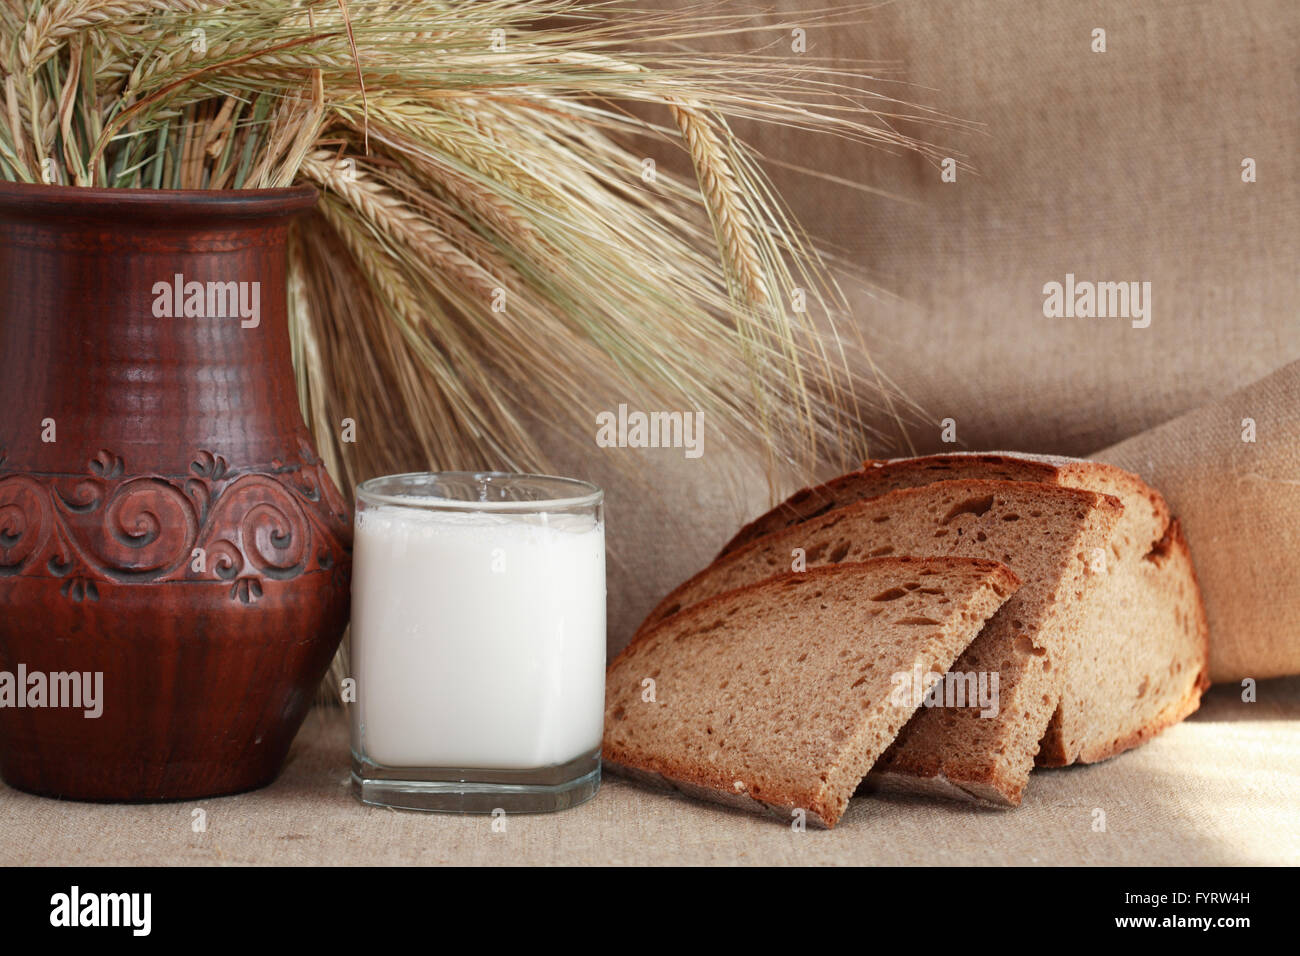 Bauernhof Essen Stilleben. Brot und Milch in der Nähe von Weizen auf  Leinwand Hintergrund Stockfotografie - Alamy